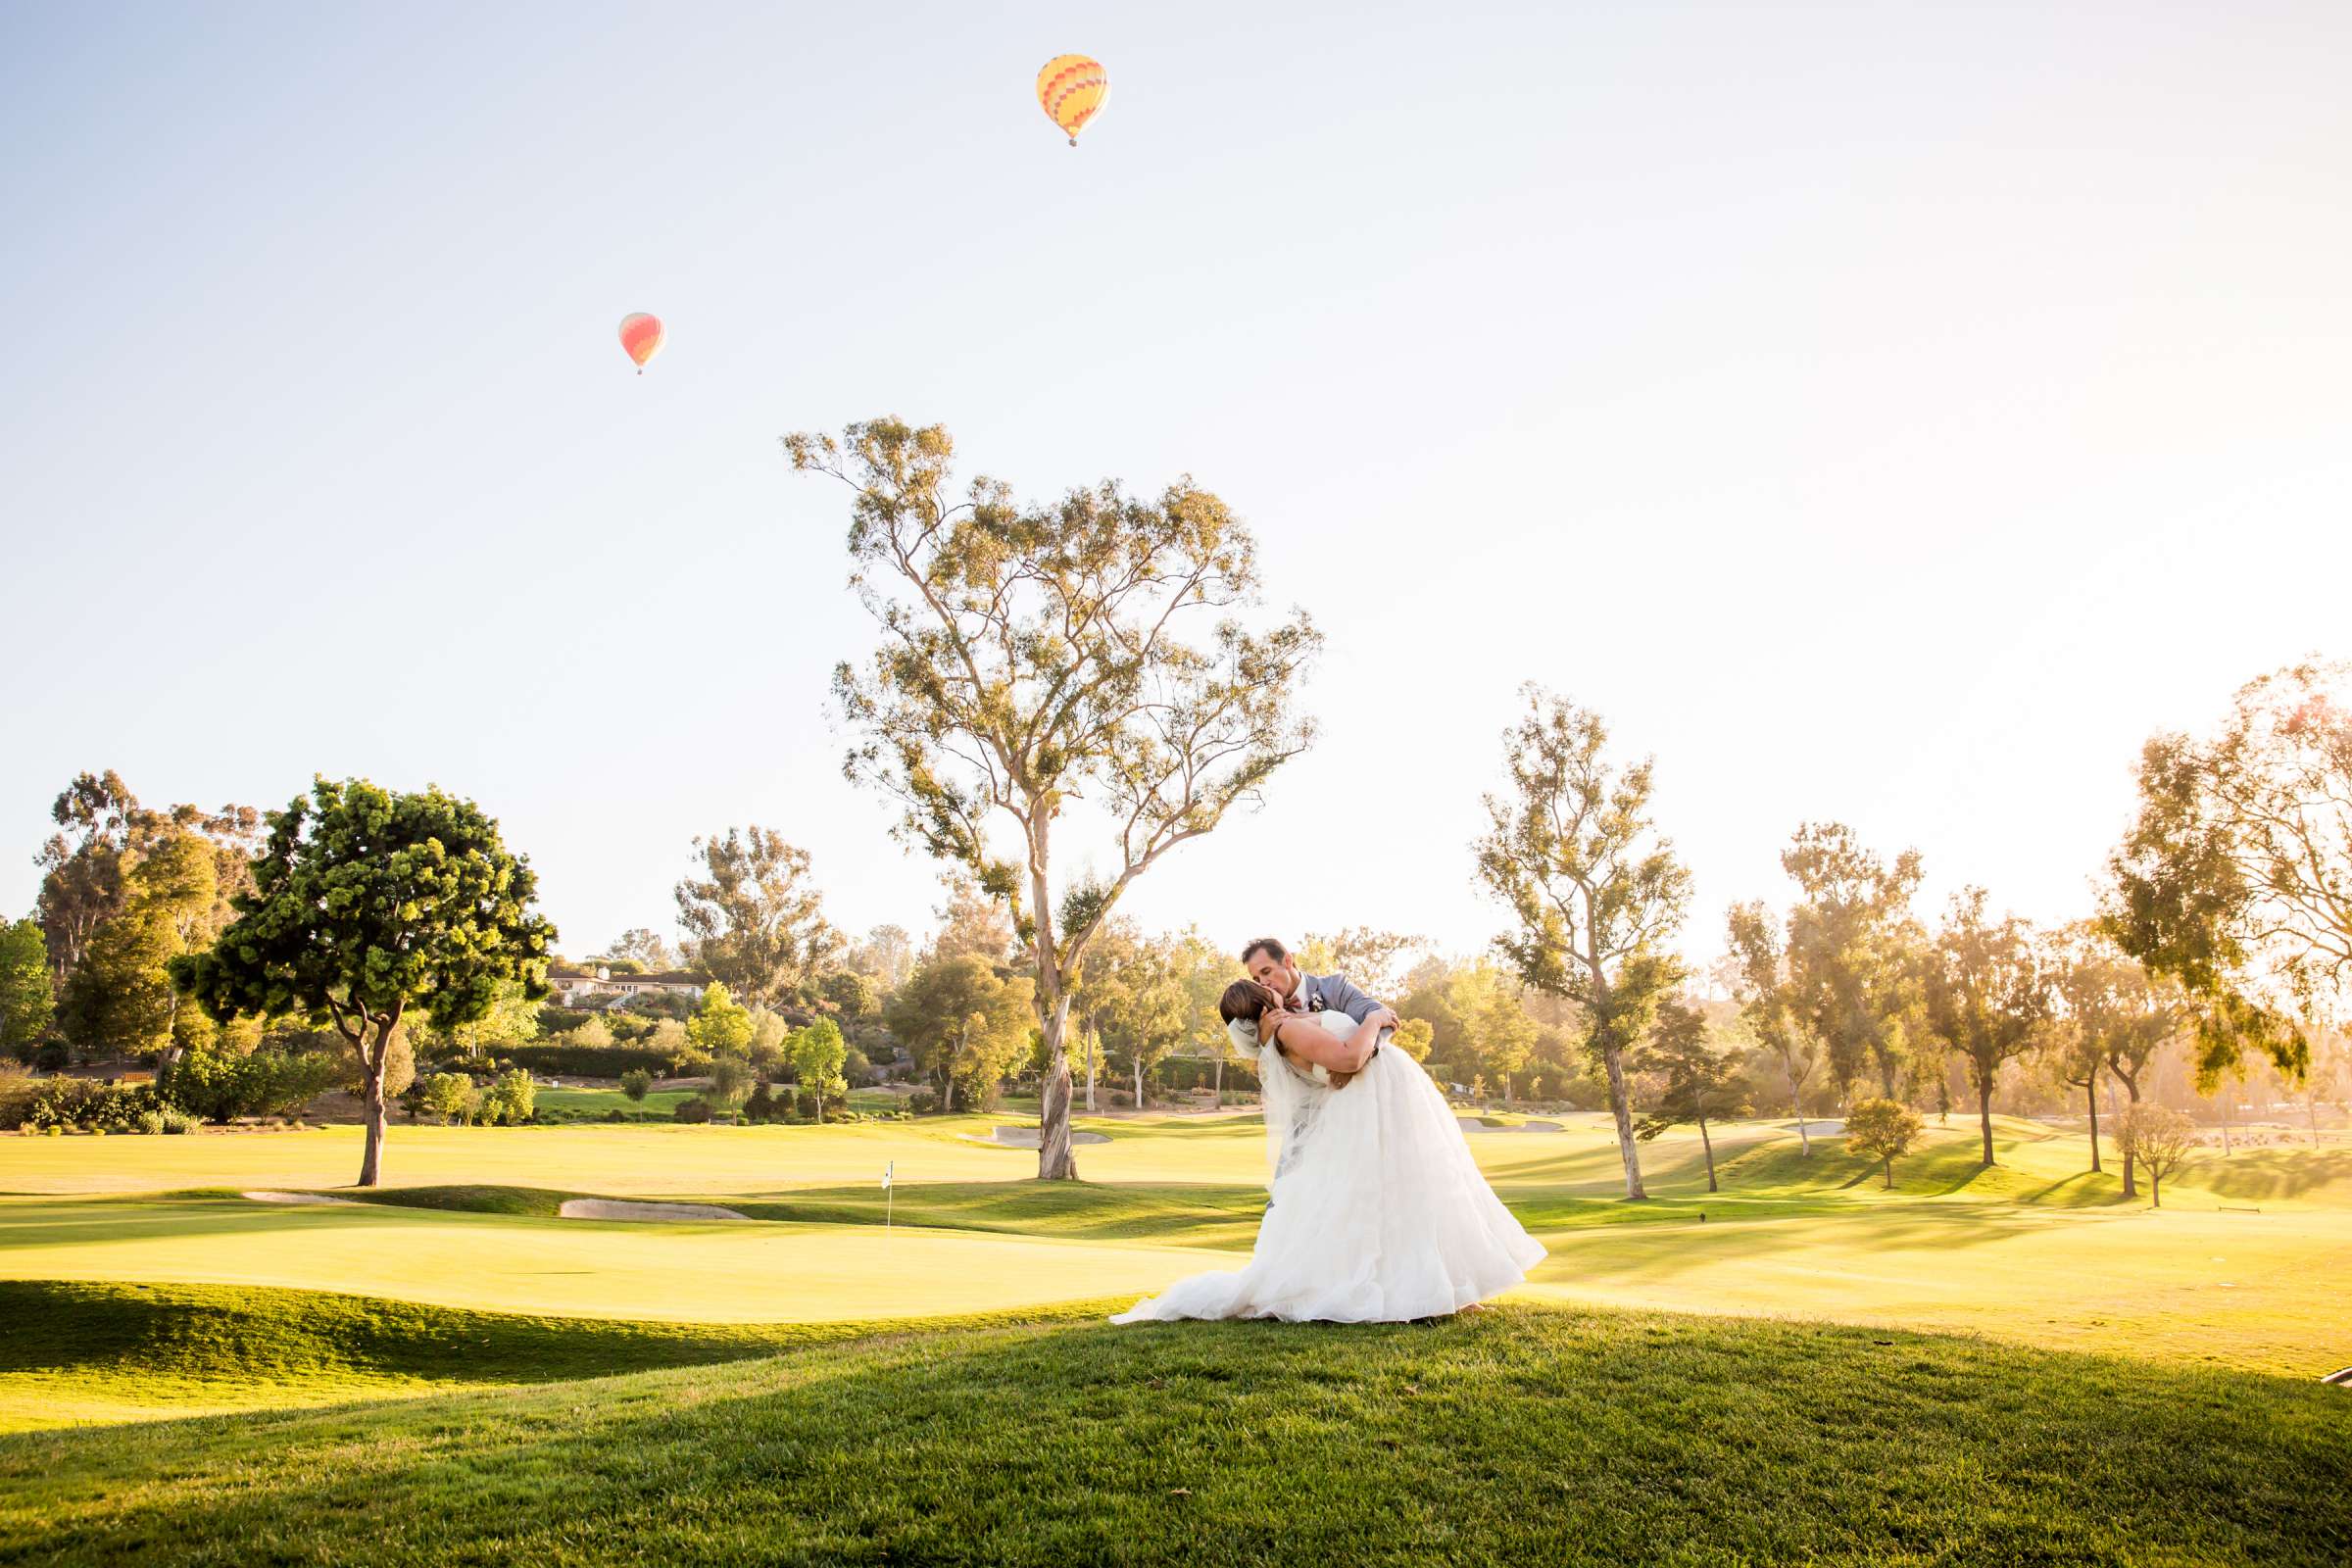 Rancho Santa Fe Golf Club Wedding coordinated by Monarch Weddings, Carolynn and Jon Wedding Photo #22 by True Photography